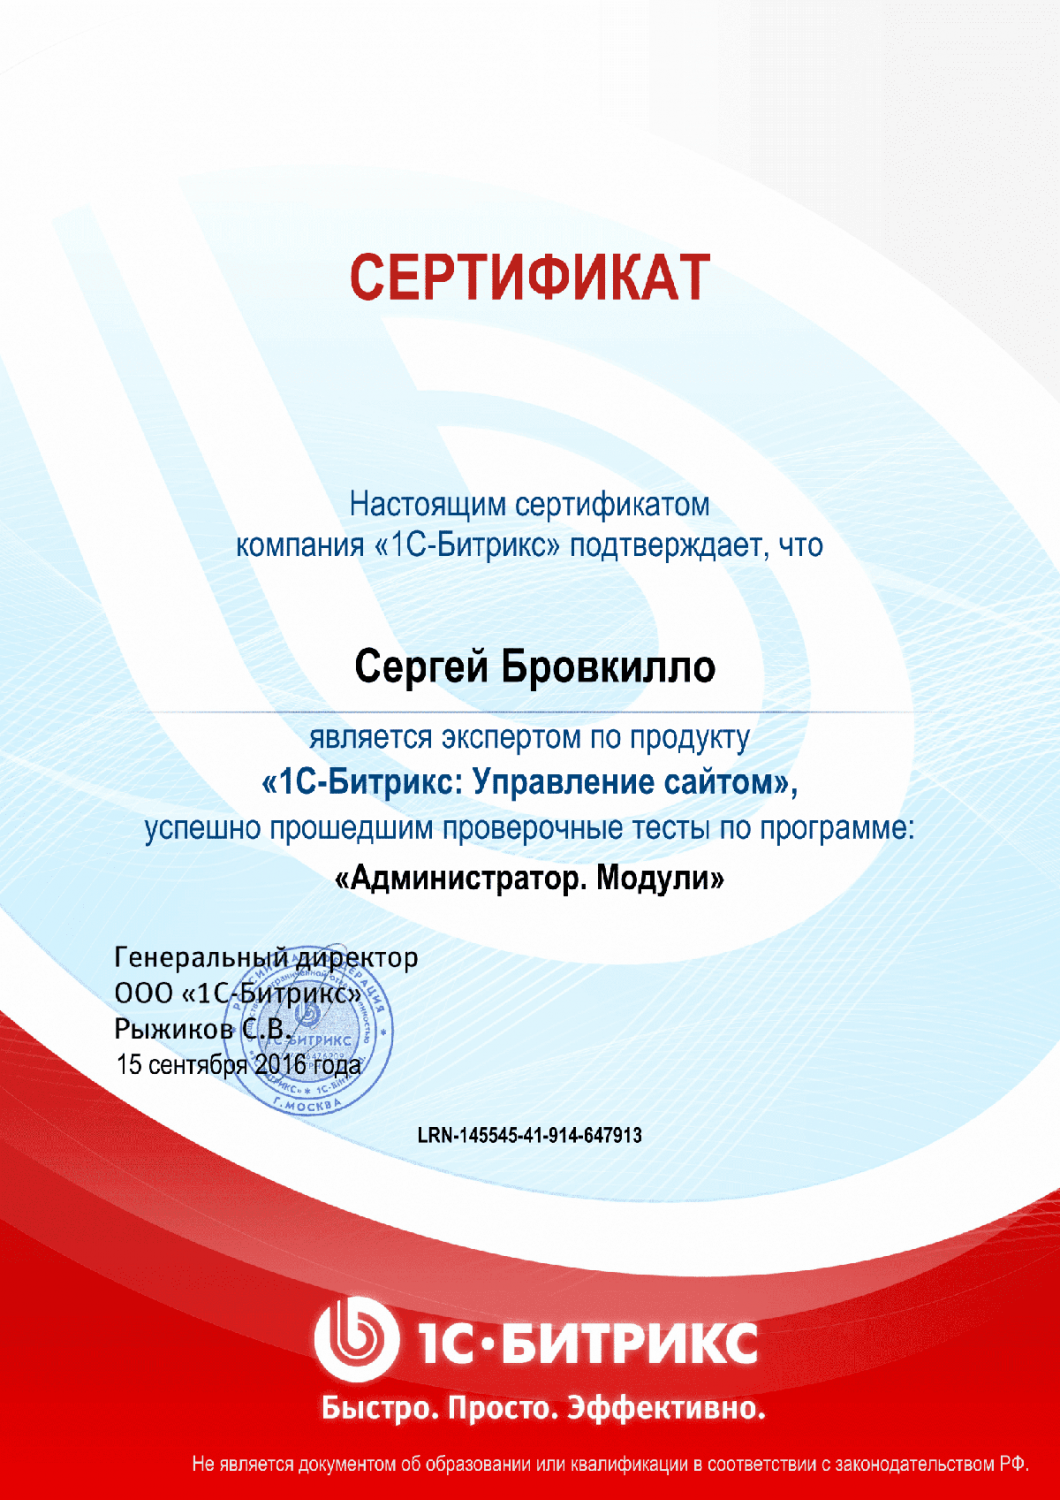 Сертификат эксперта по программе "Администратор. Модули" в Якутска